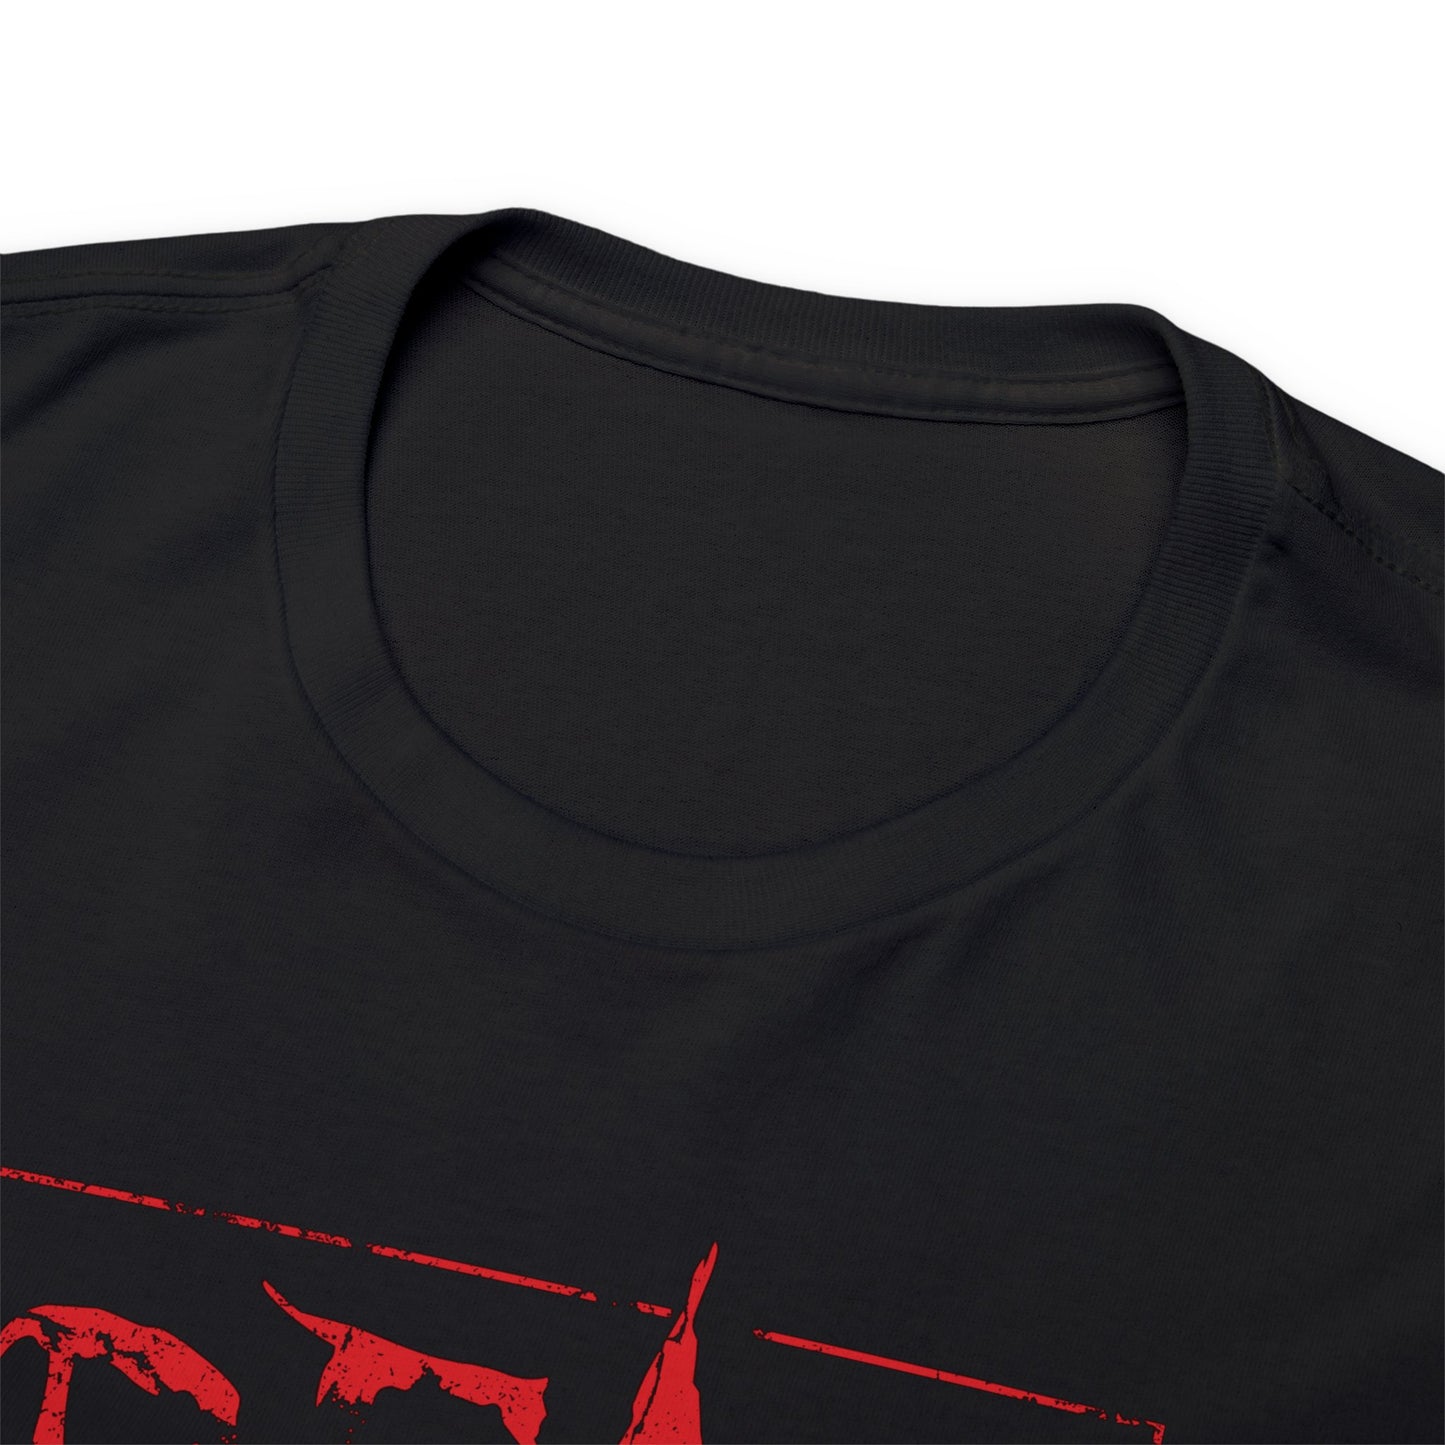 Unisex T-shirt Dead Inside in Red - Frogos Design